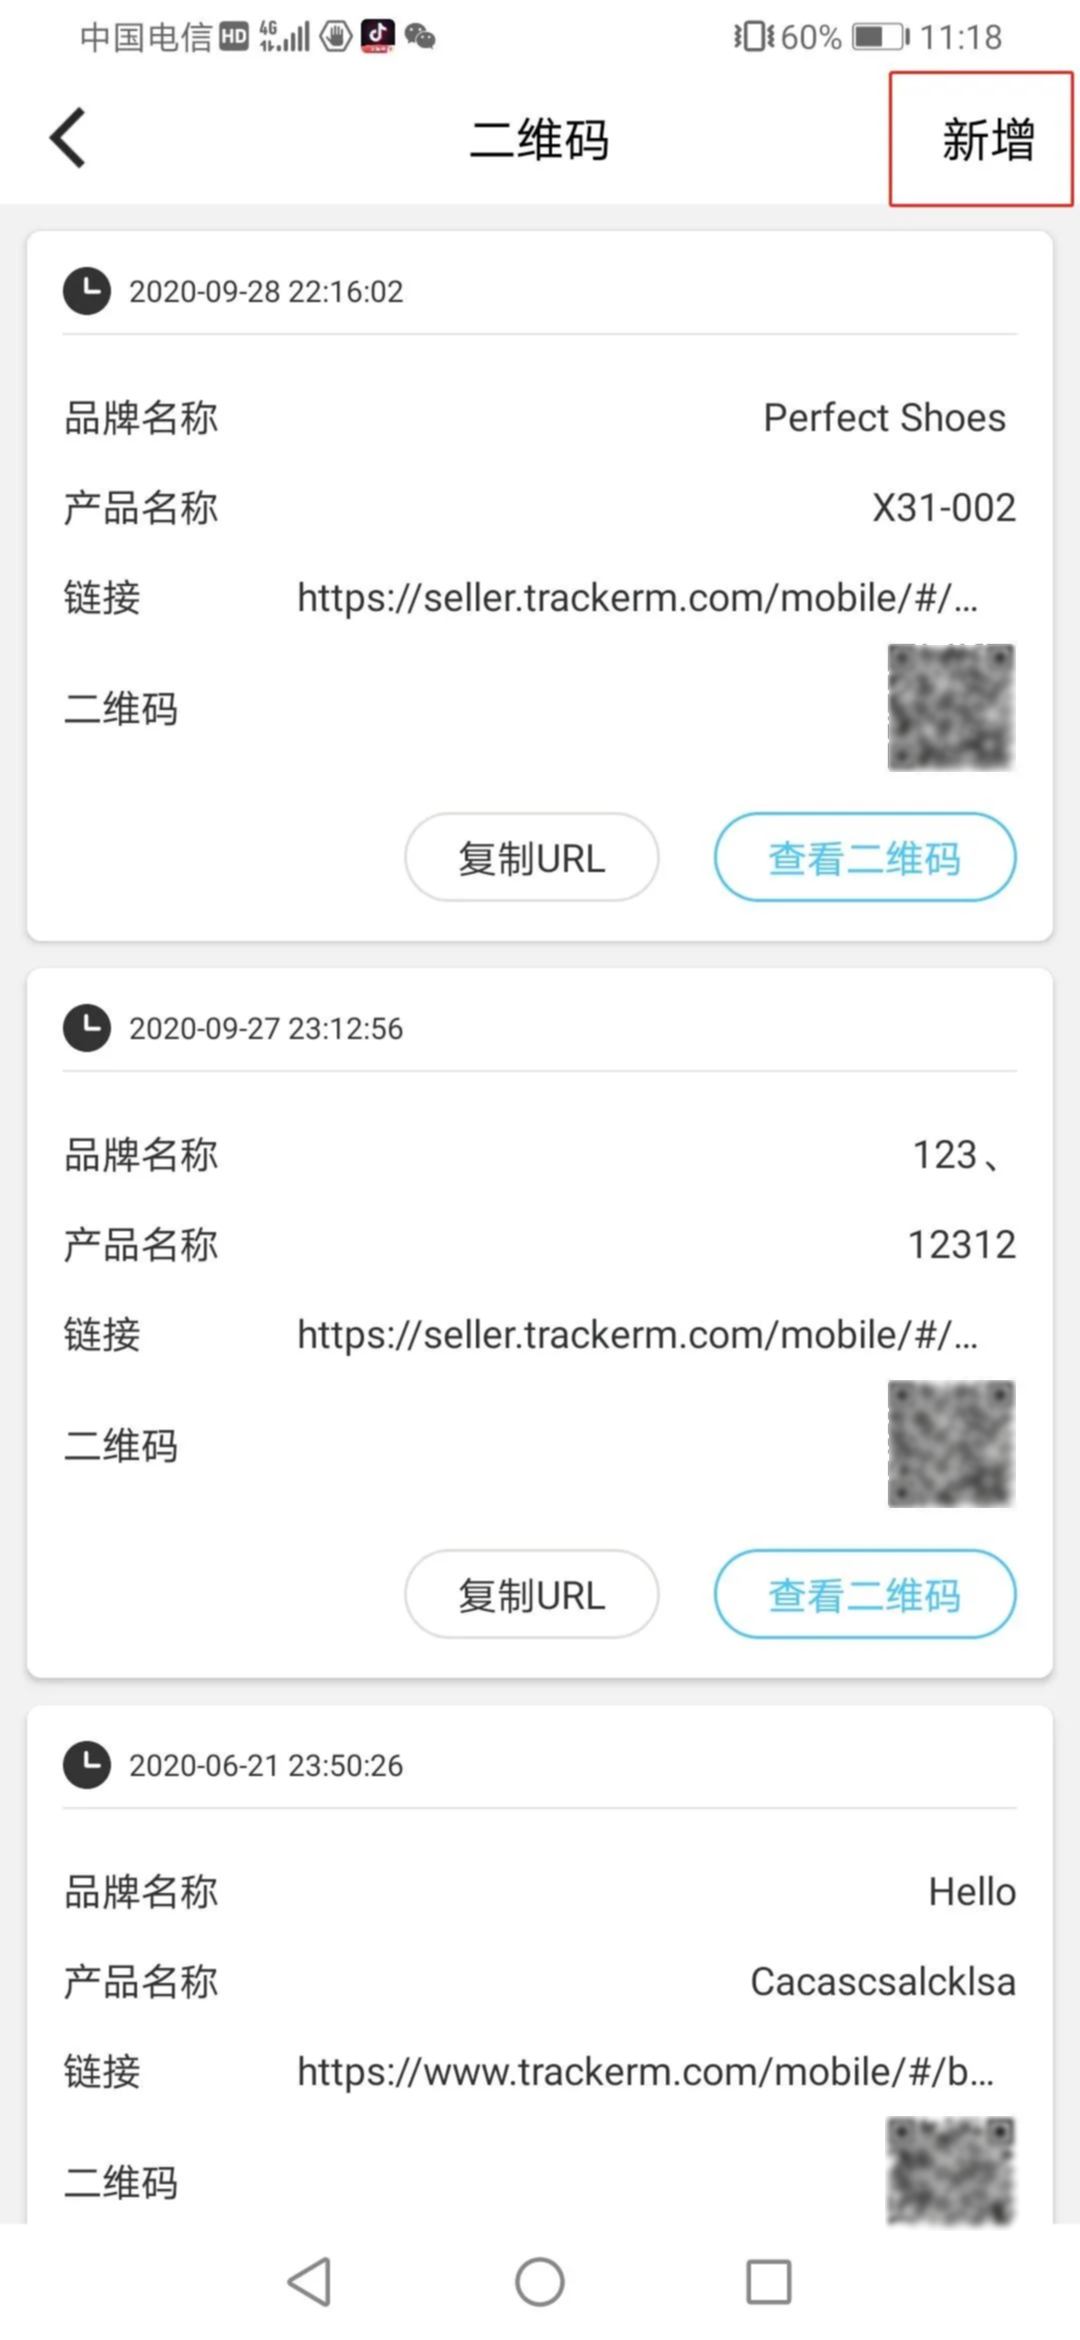 Tracker M即时聊天功能